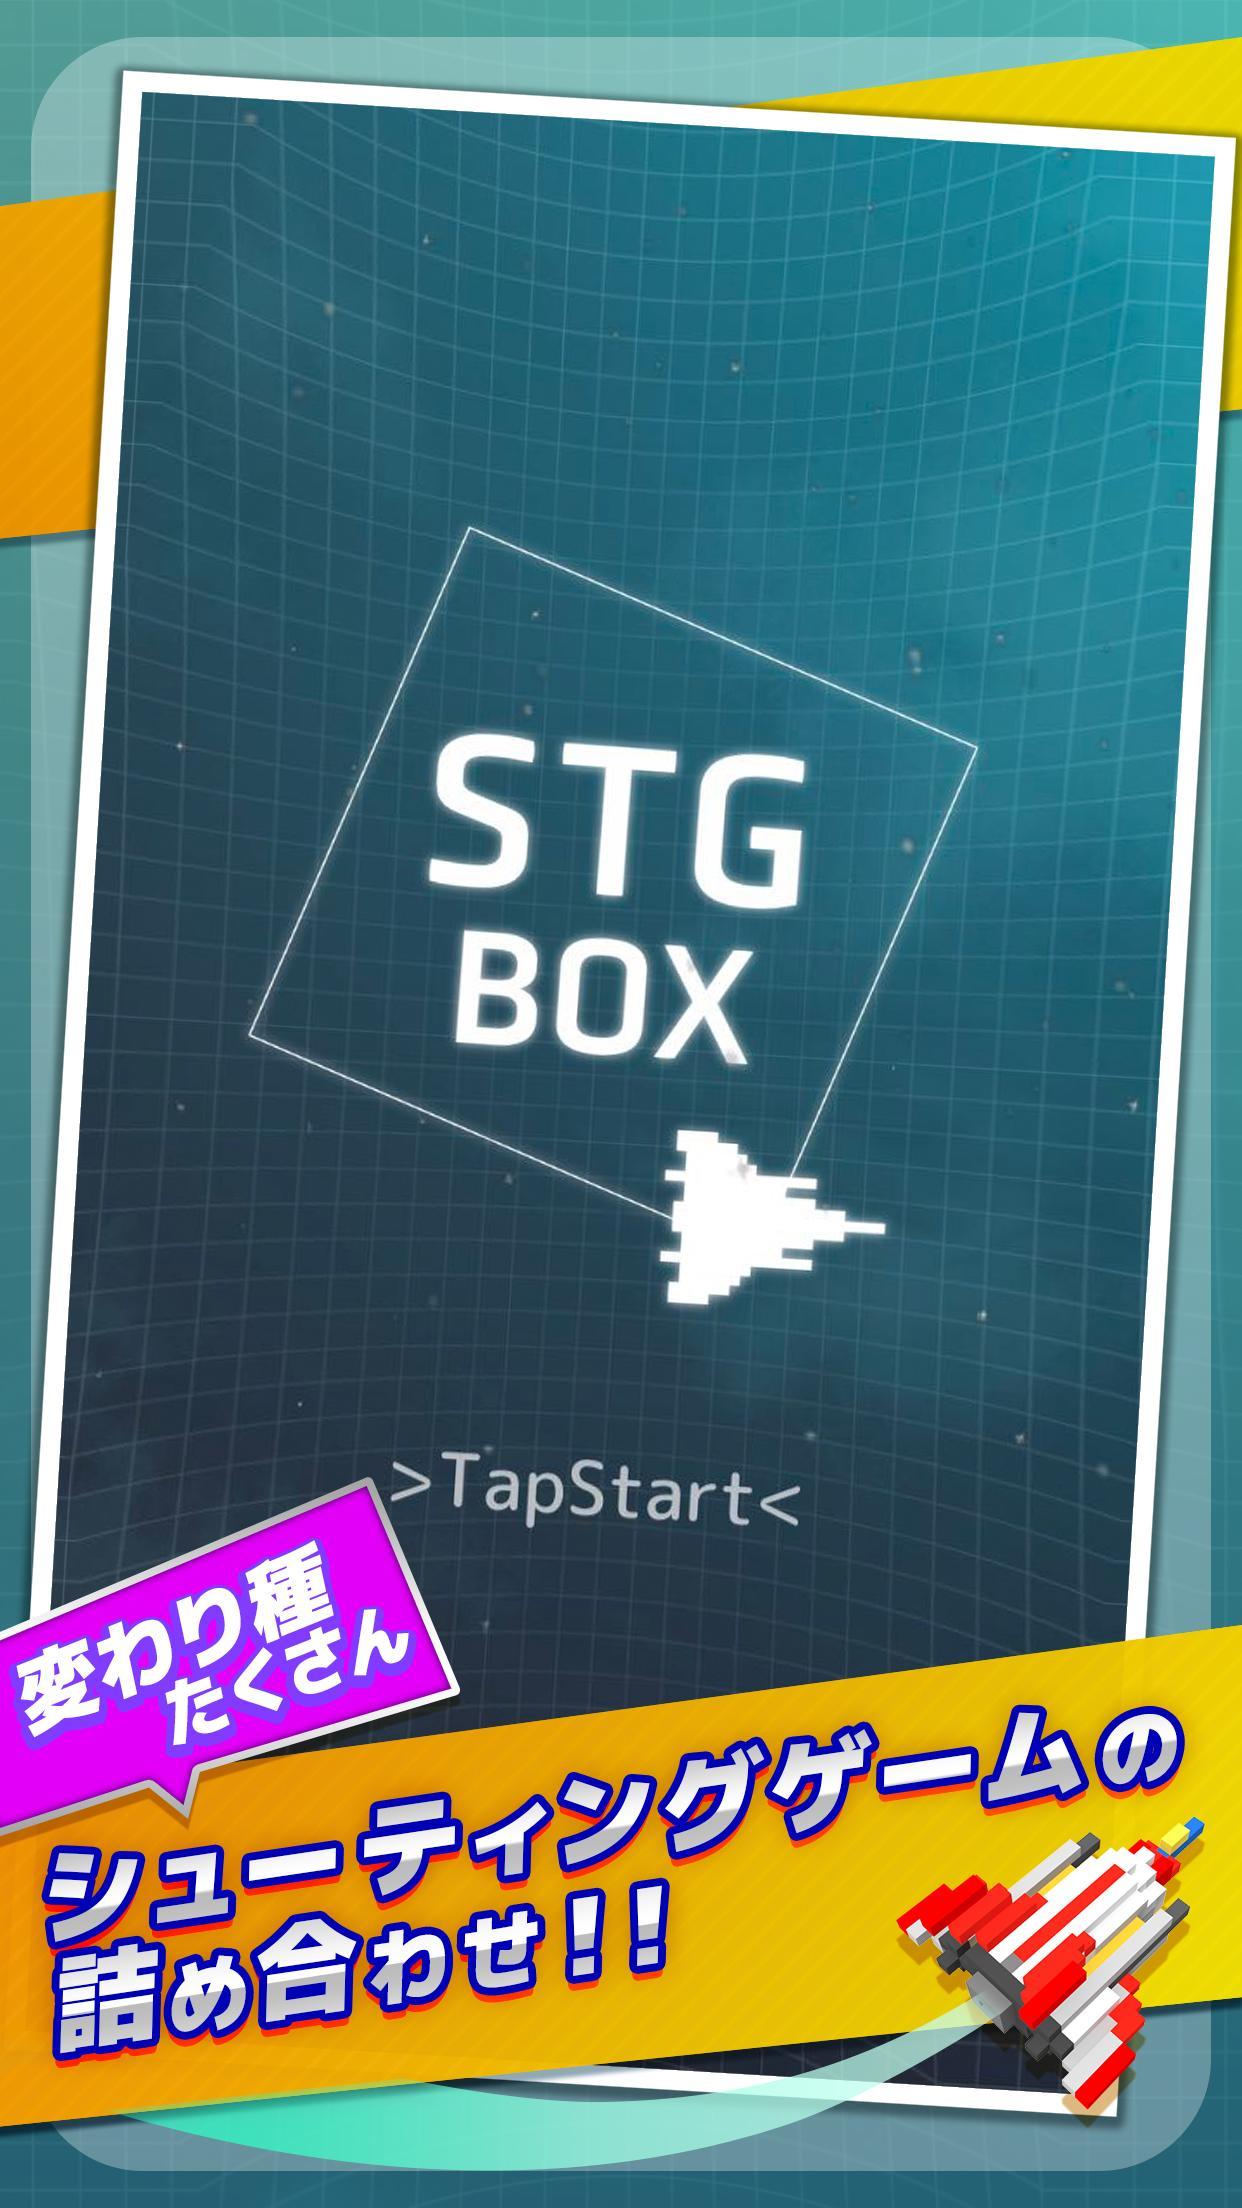 Screenshot 1 of シューティングボックス(STG BOX) - カジュアル・レトロ・アーケード 2.0.6